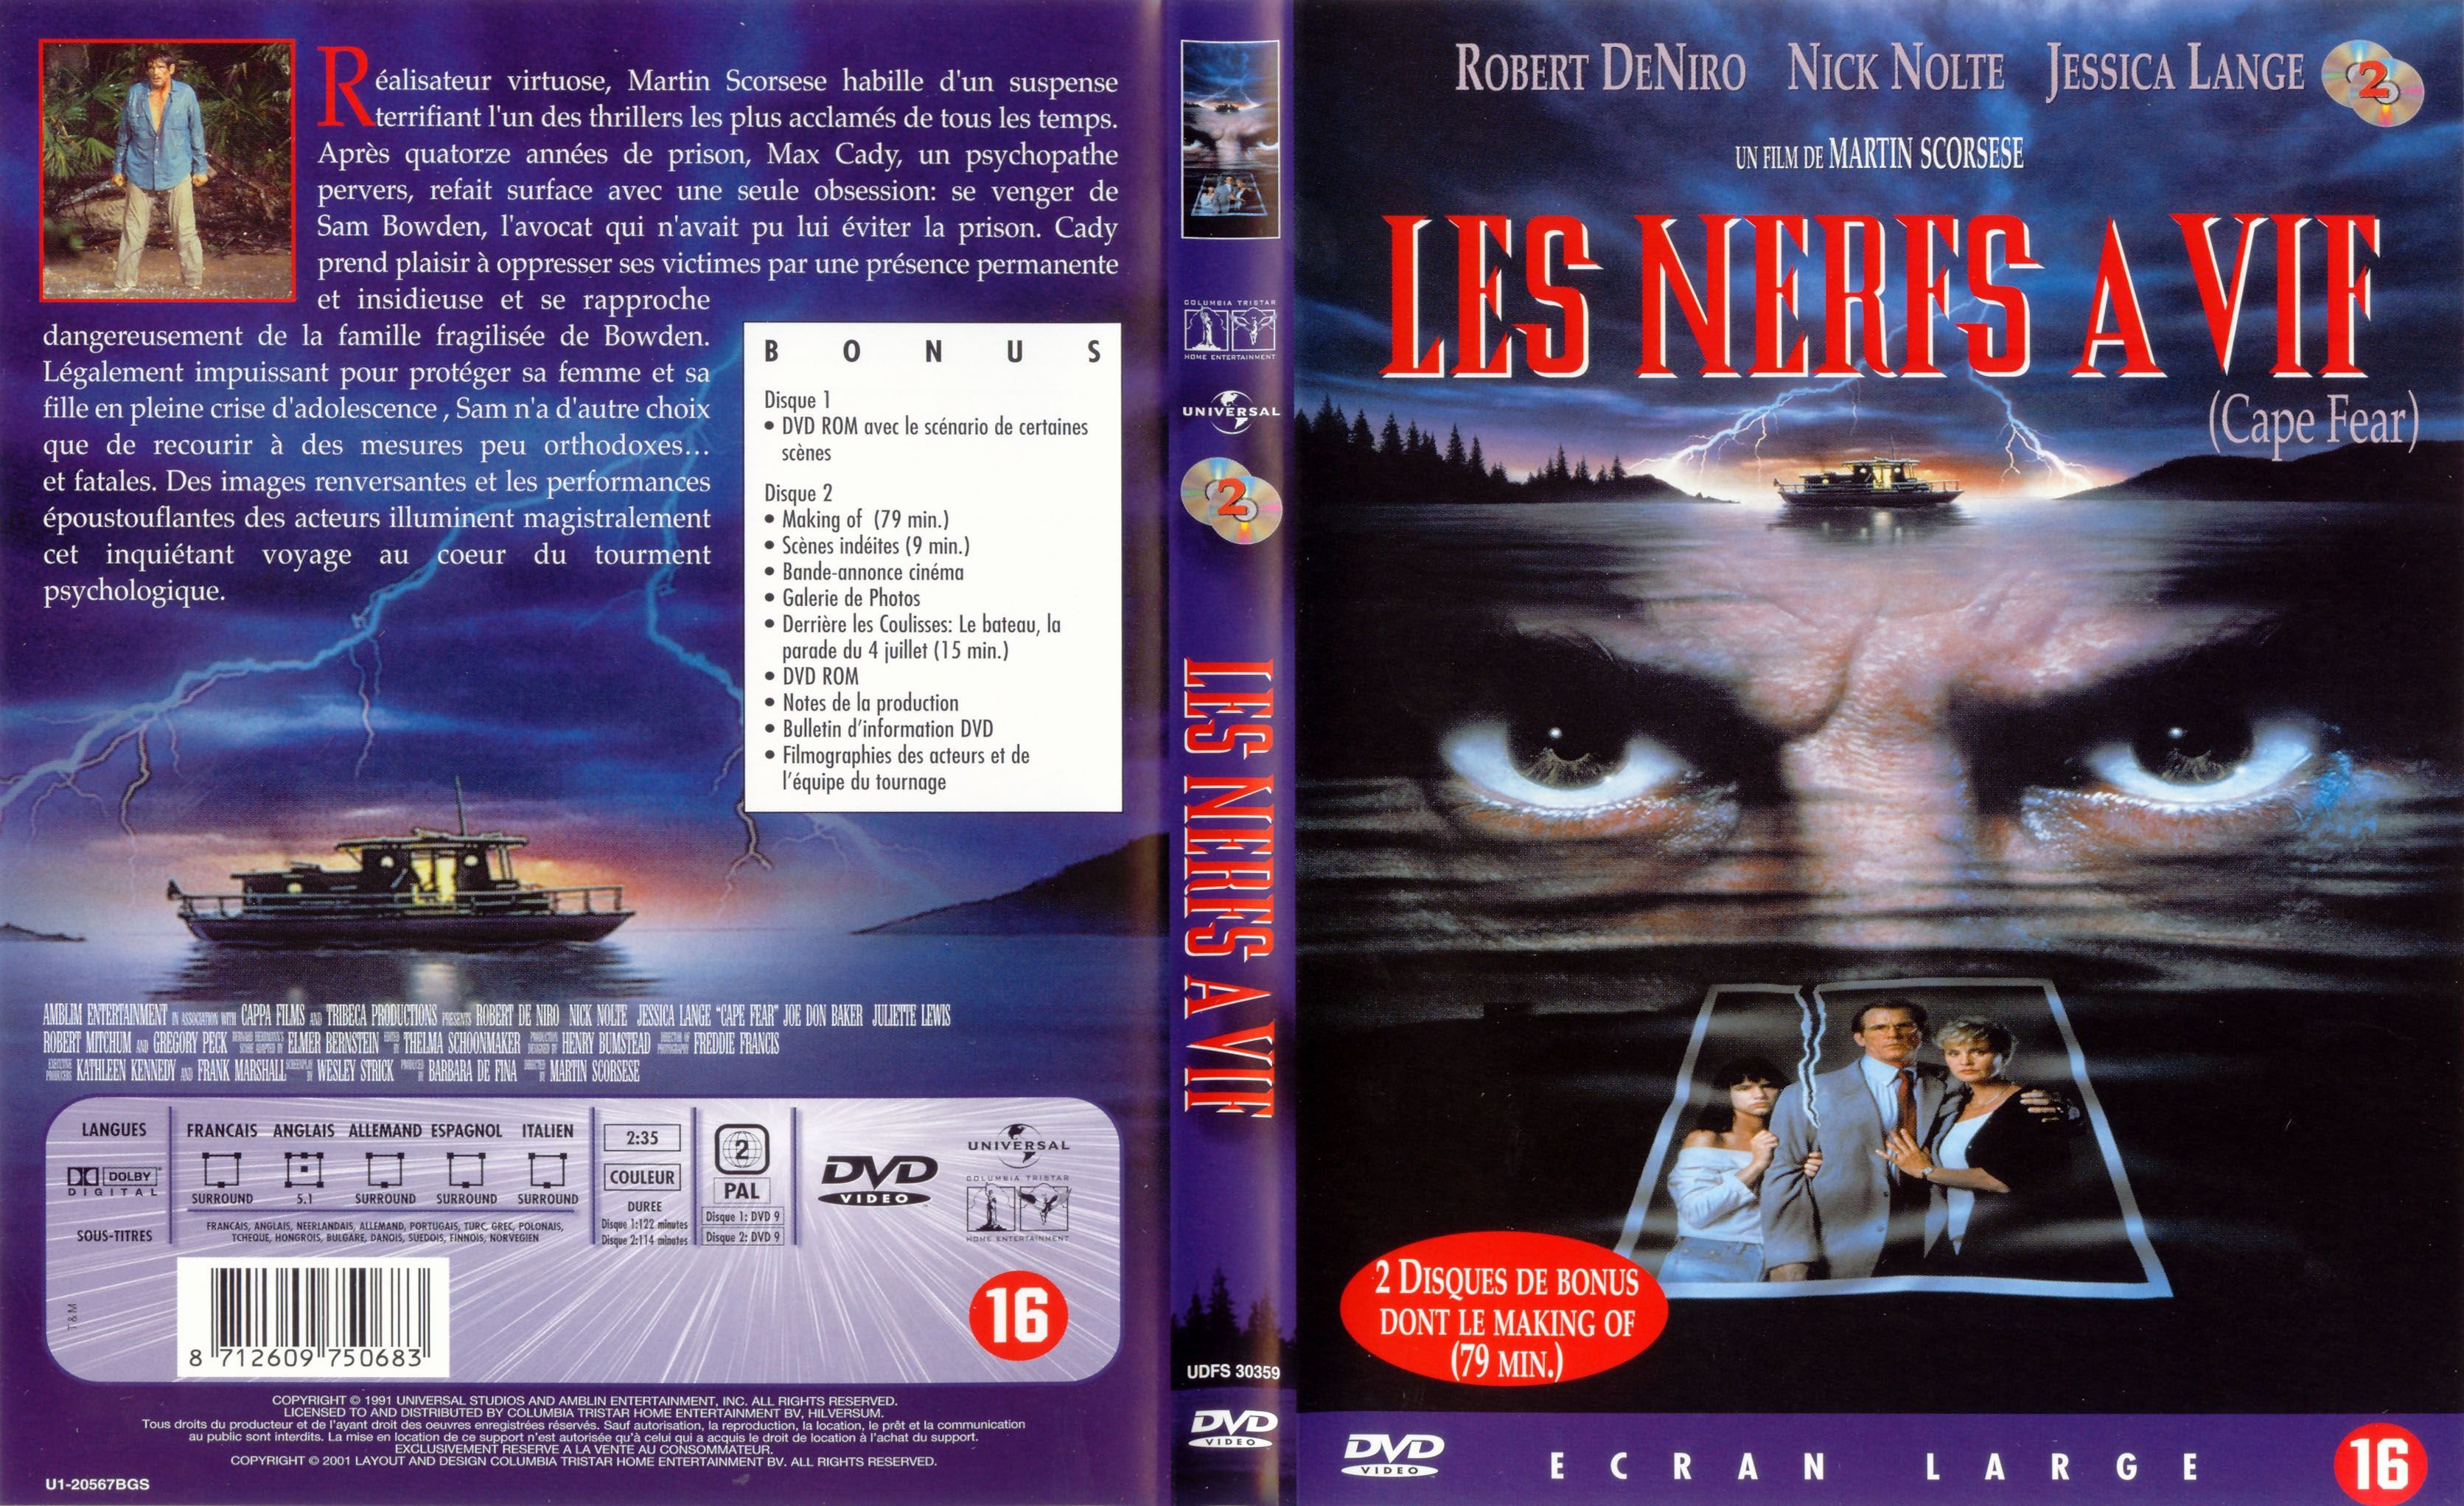 Jaquette DVD de Les nerfs à - Cinéma Passion